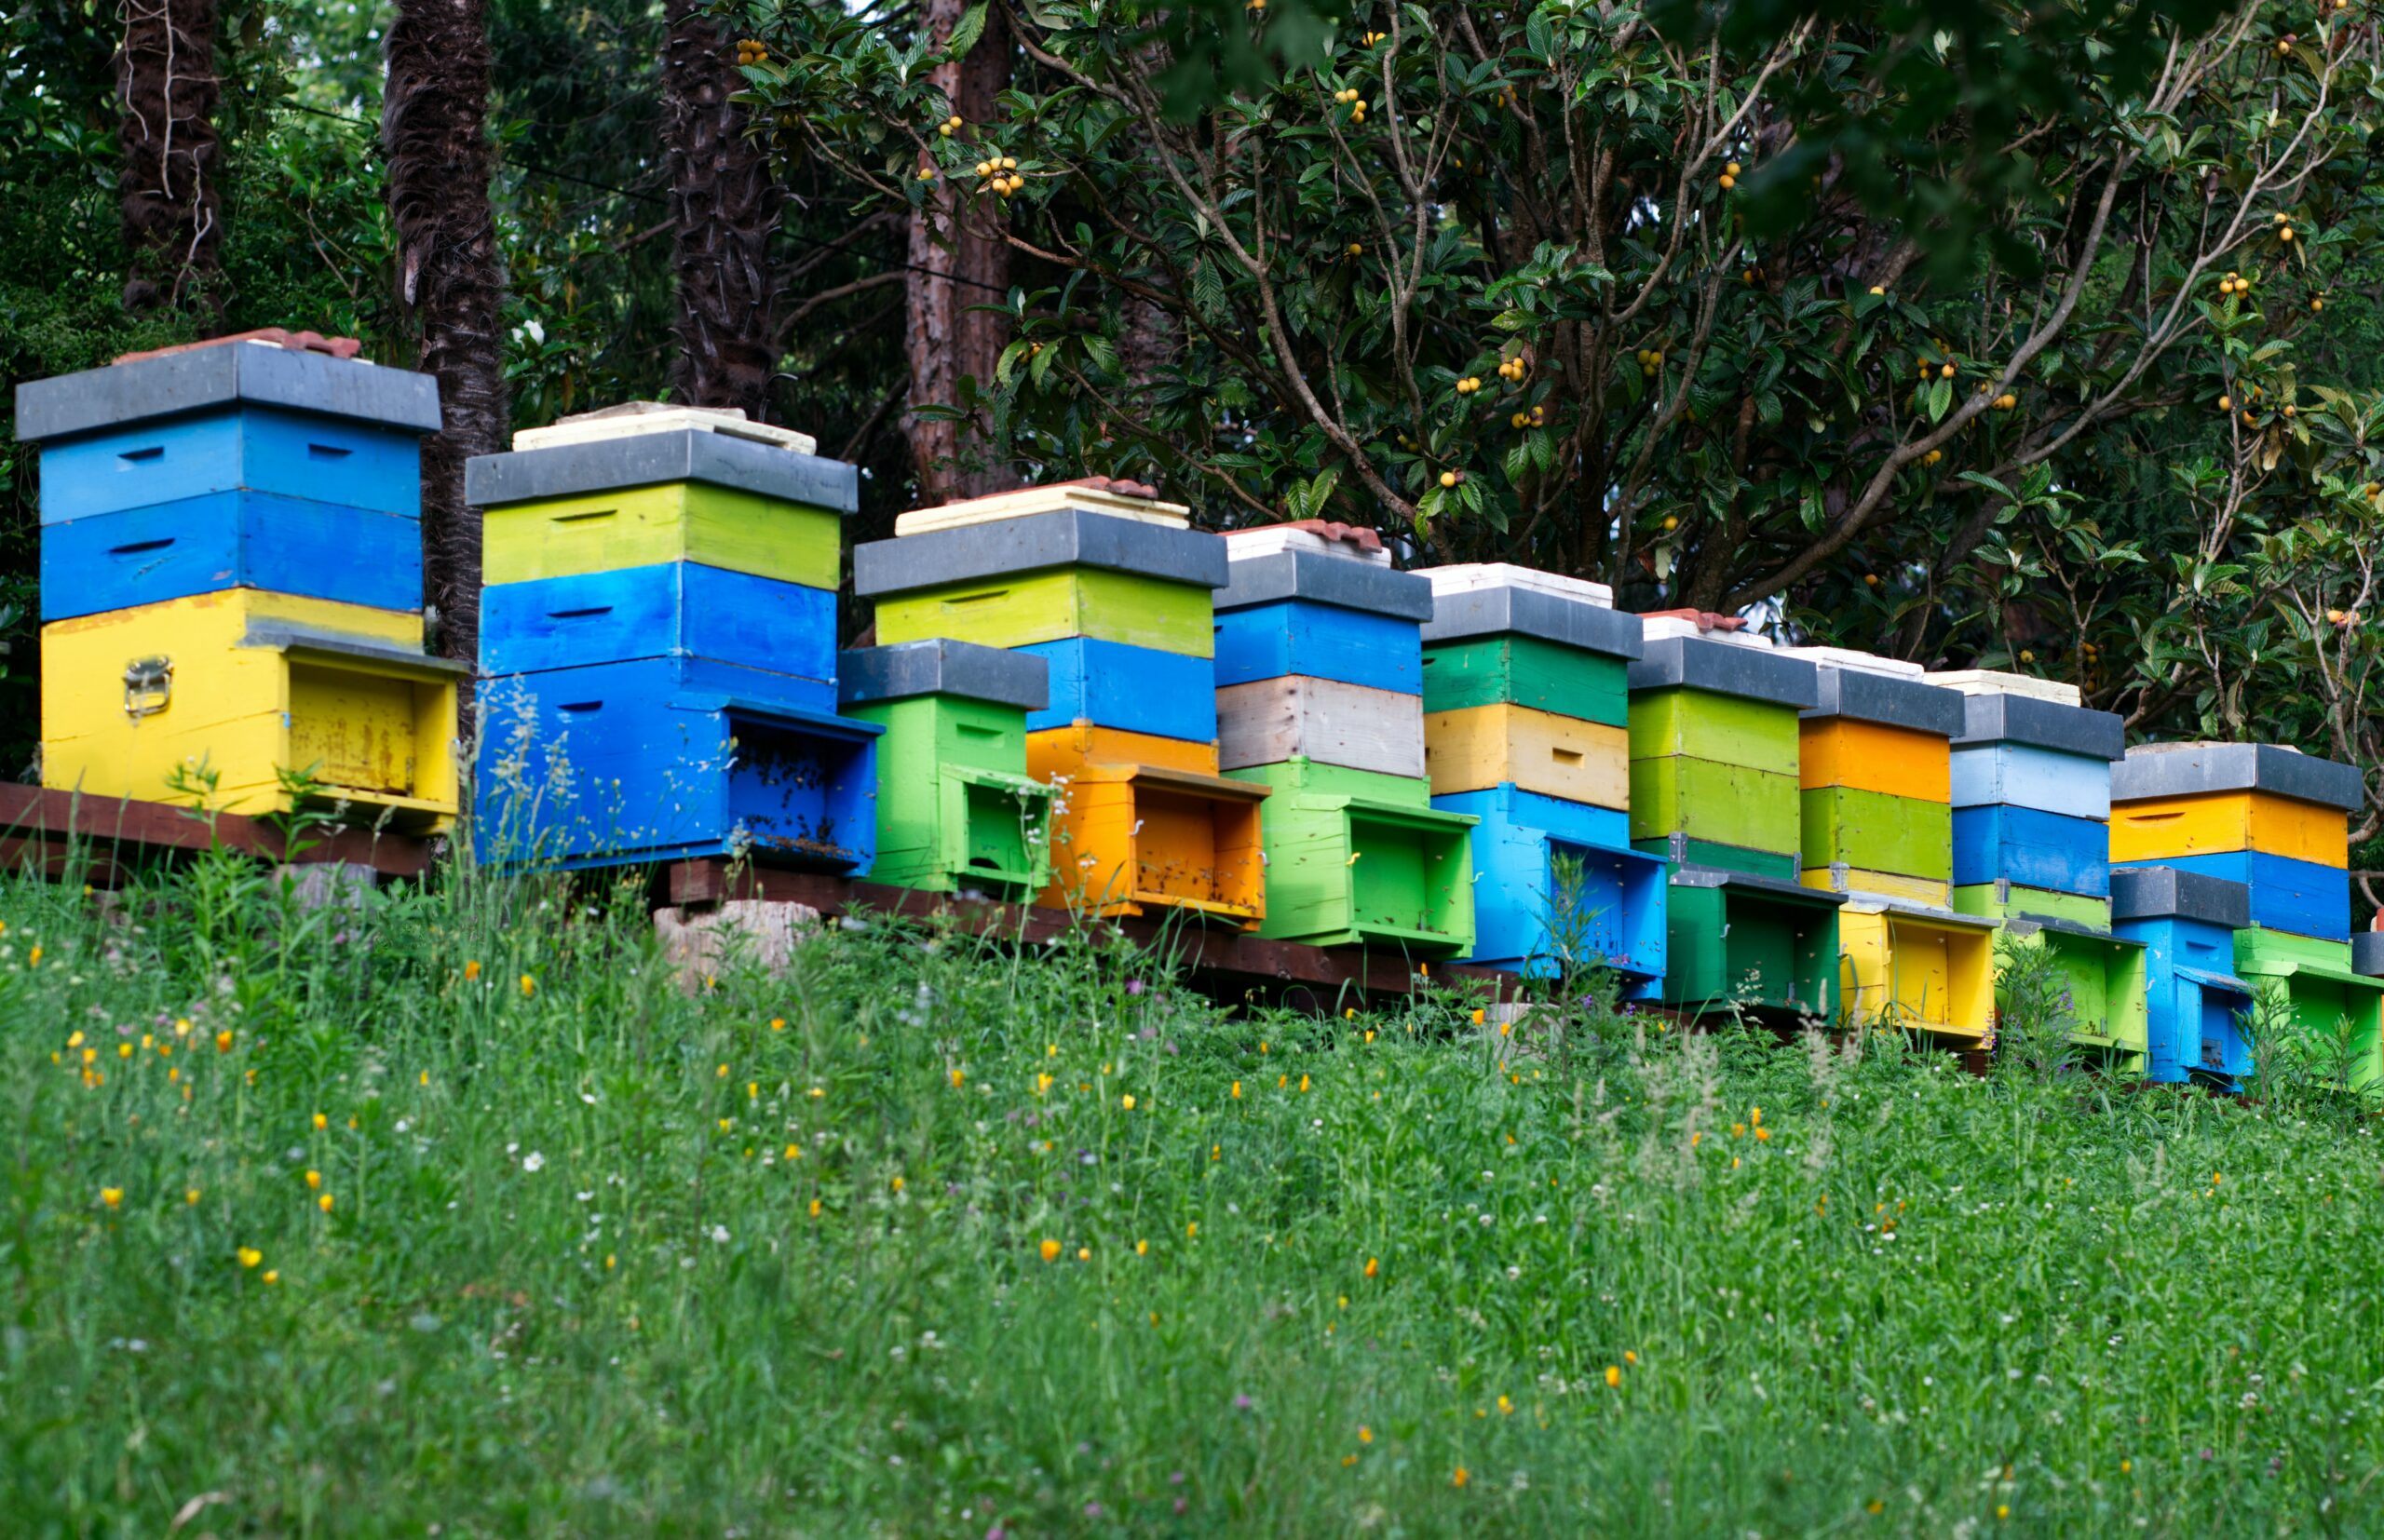 Um so viele Bienenvölker halten zu können, muss man schon einen großen Garten sein Eigen nennen (Foto: iridial/Unsplash).